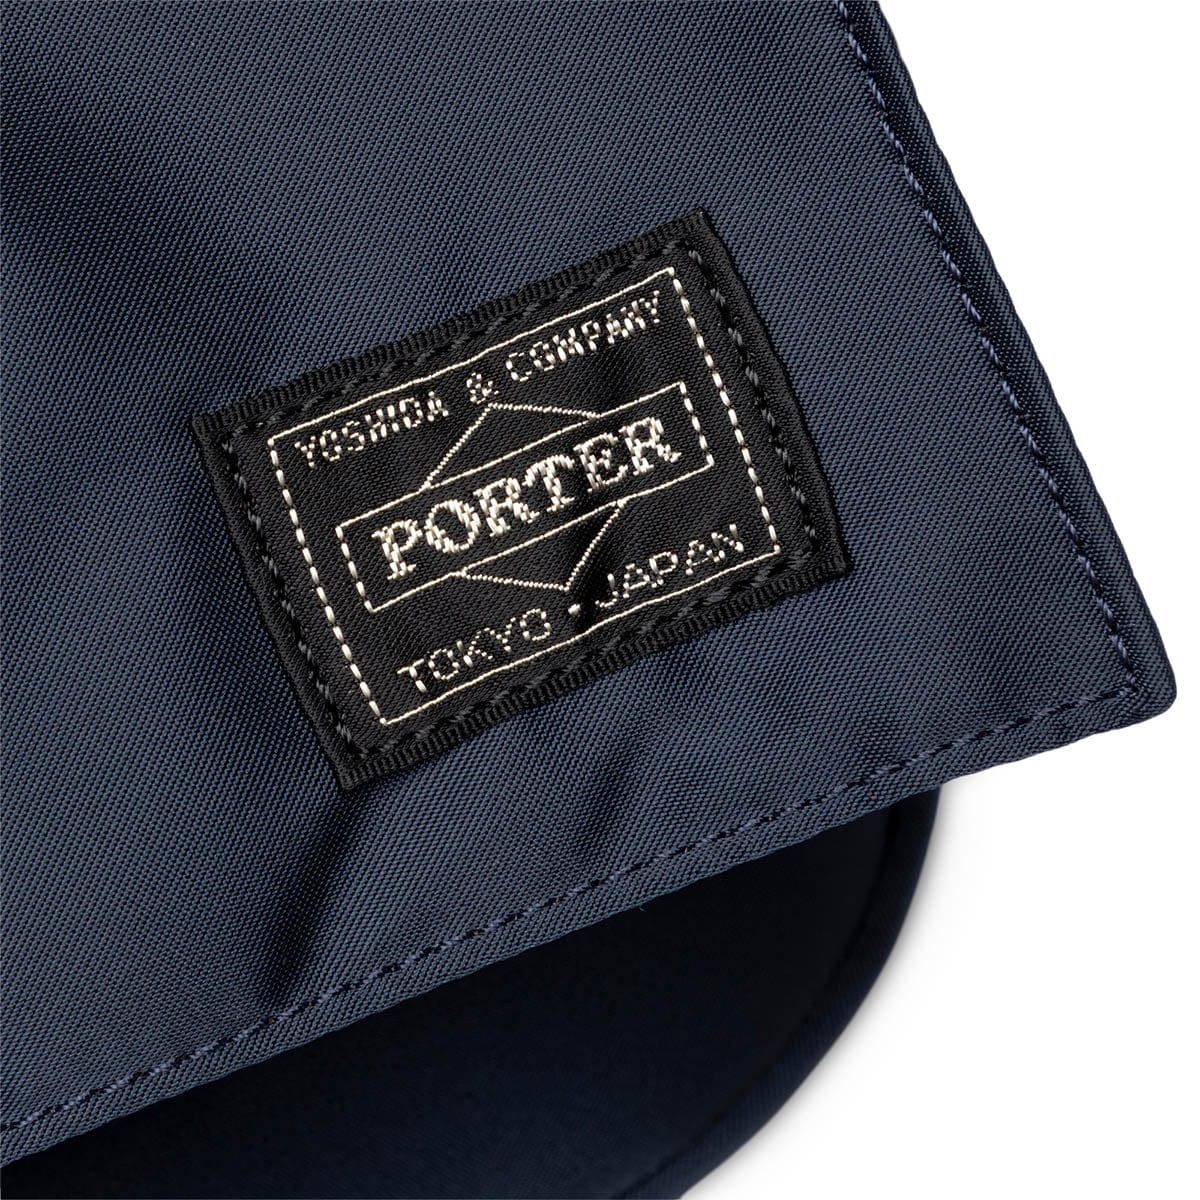 Porter Tanker Shoulder Bag Iron Blue – LESS 17